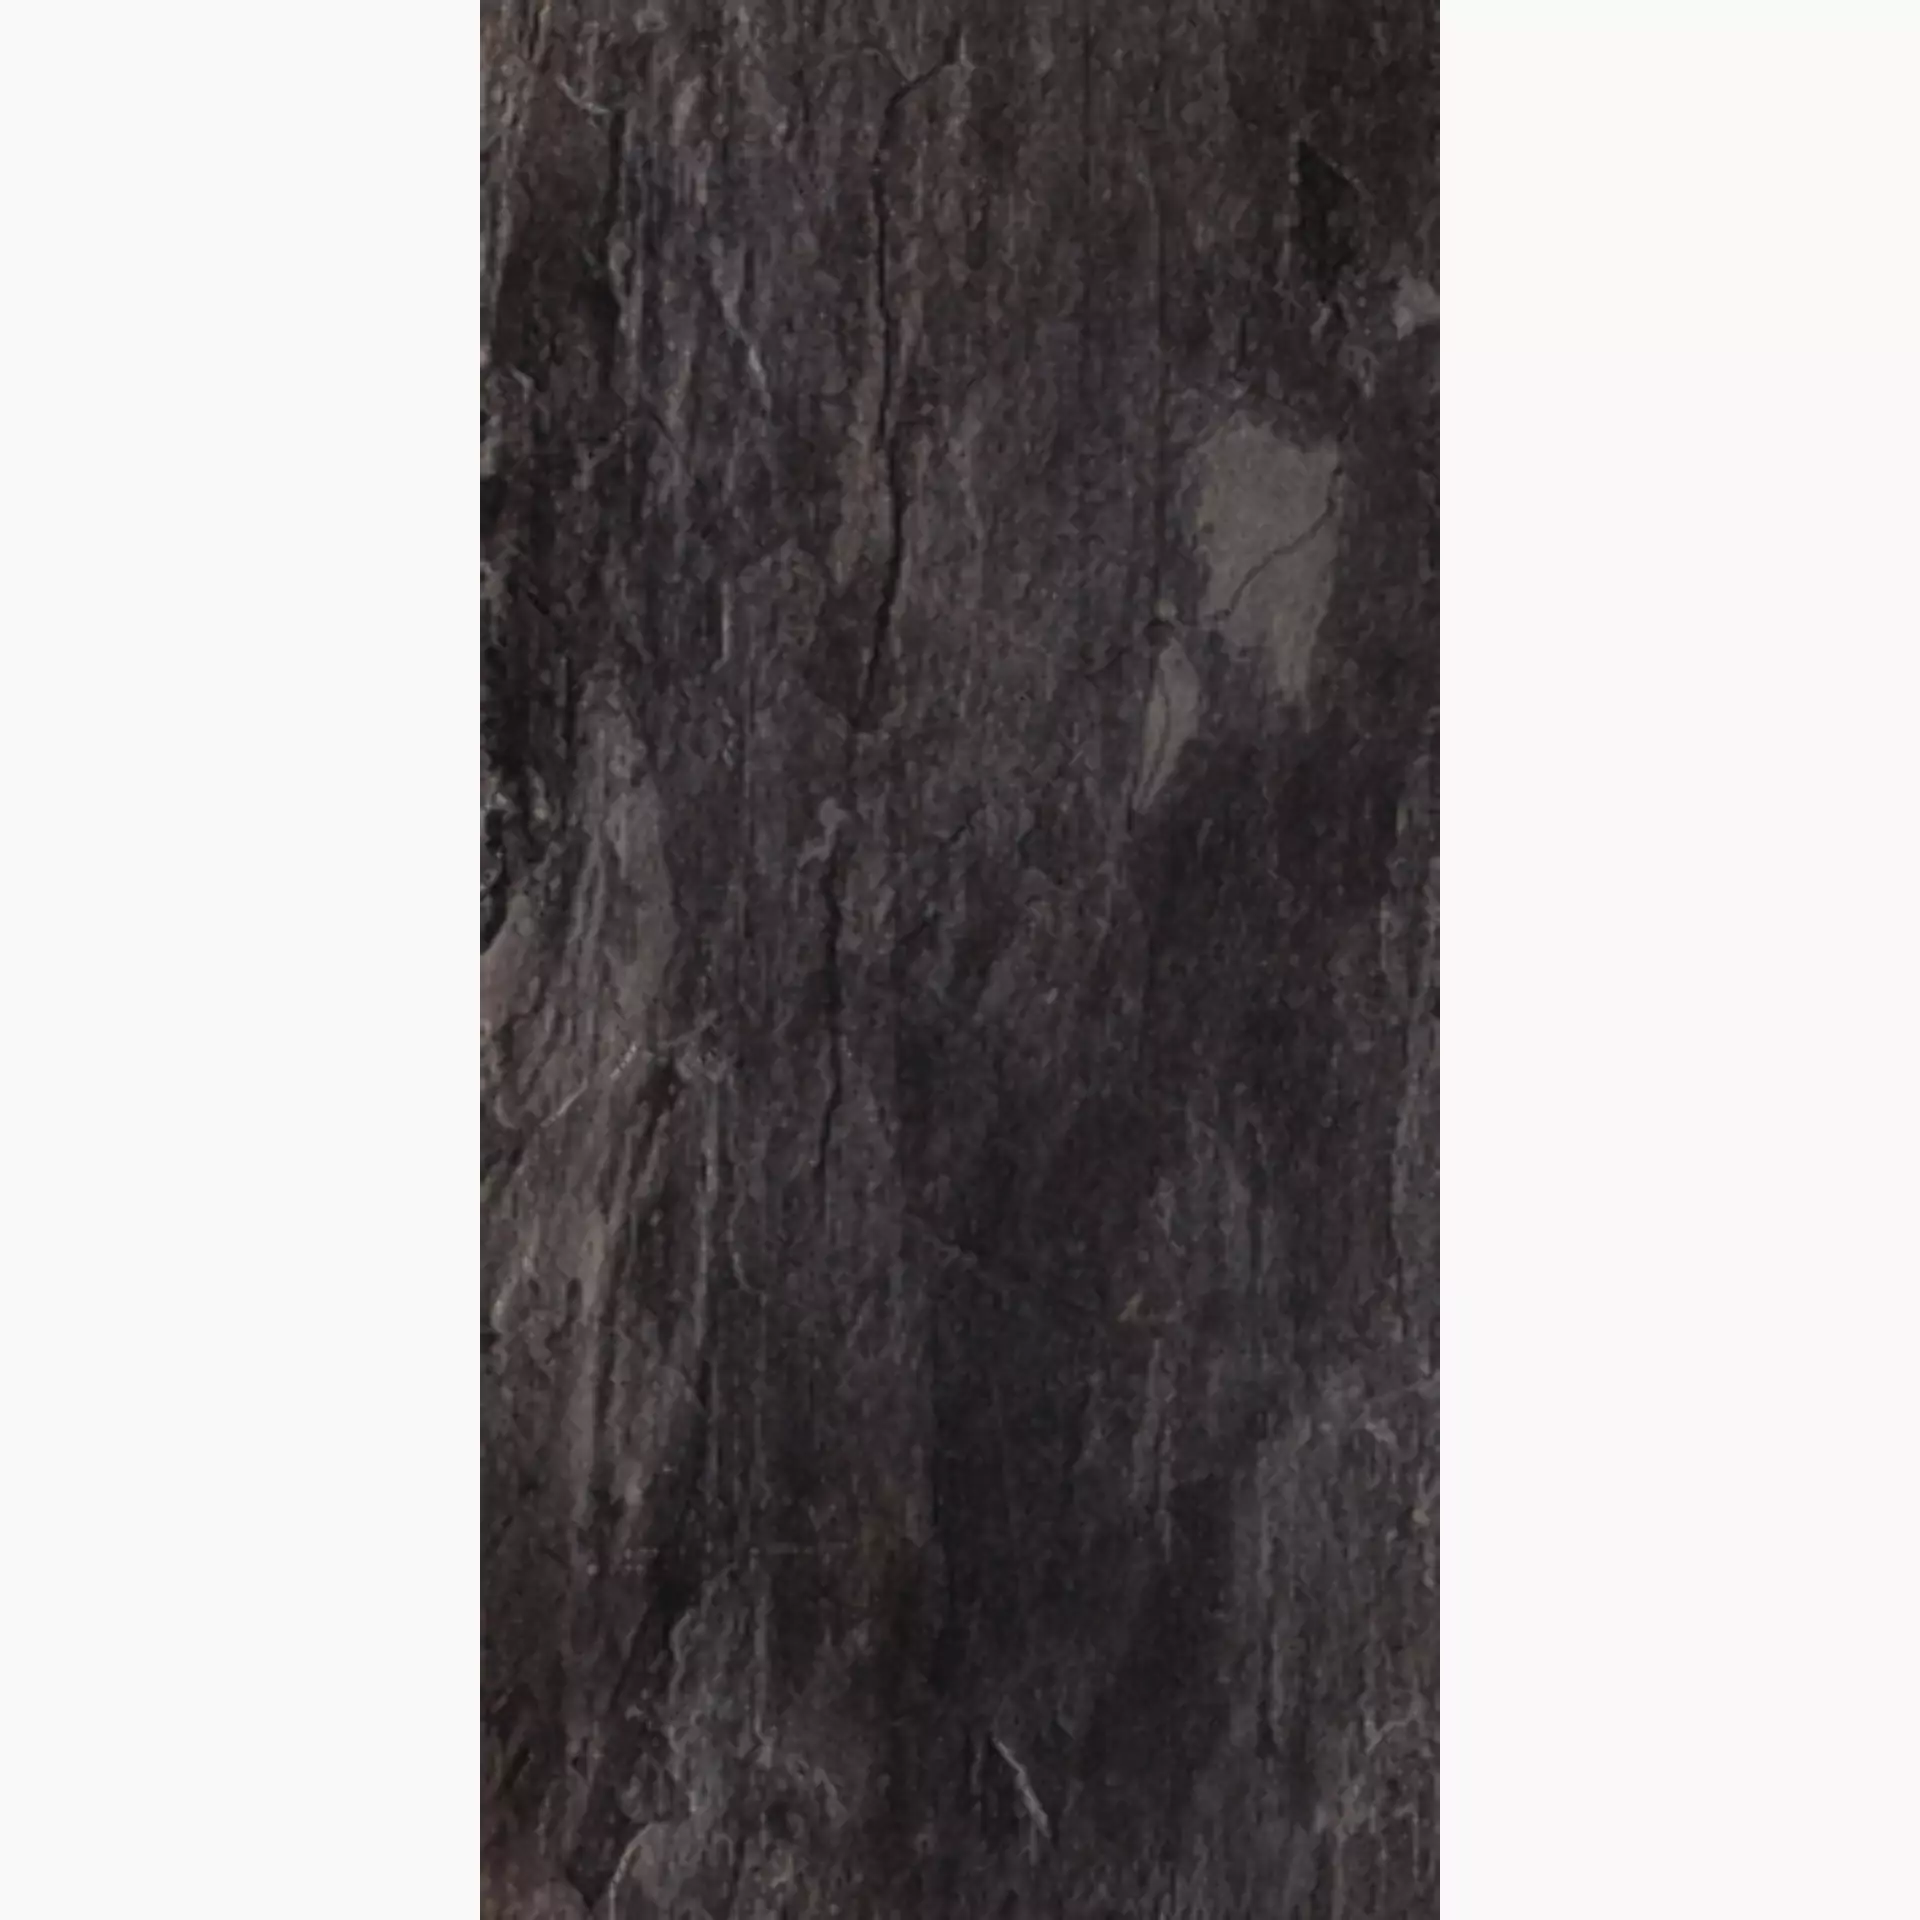 Florim Ardoise Noir Naturale – Matt Noir 738710 matt natur 30,4x60,8cm rektifiziert 9mm